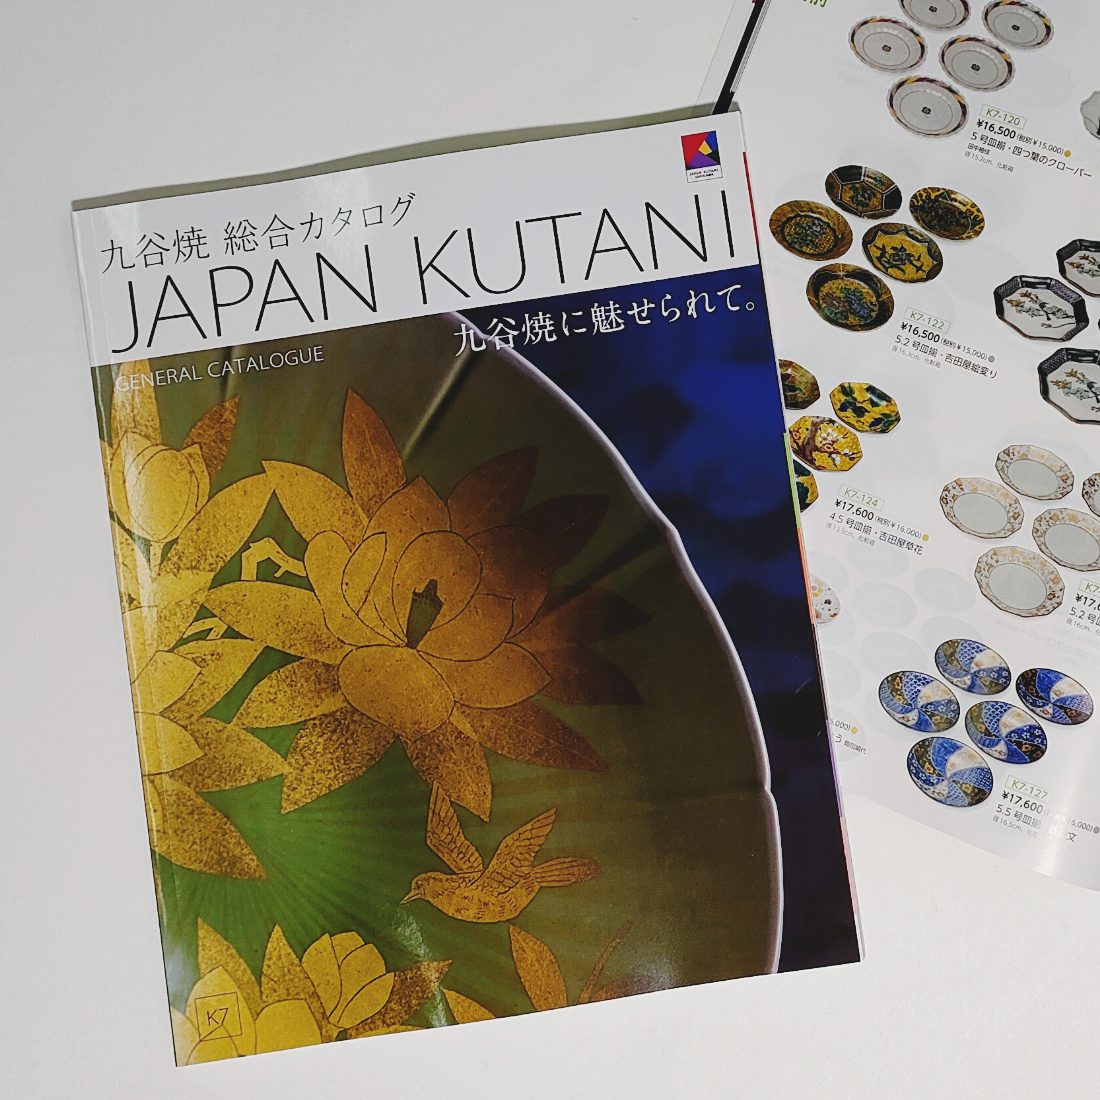 九谷焼 総合カタログ 「JAPAN KUTANI GENERAL CATALOGUE K7」を発行しました | 九谷なごみ - 伊野正峰株式会社